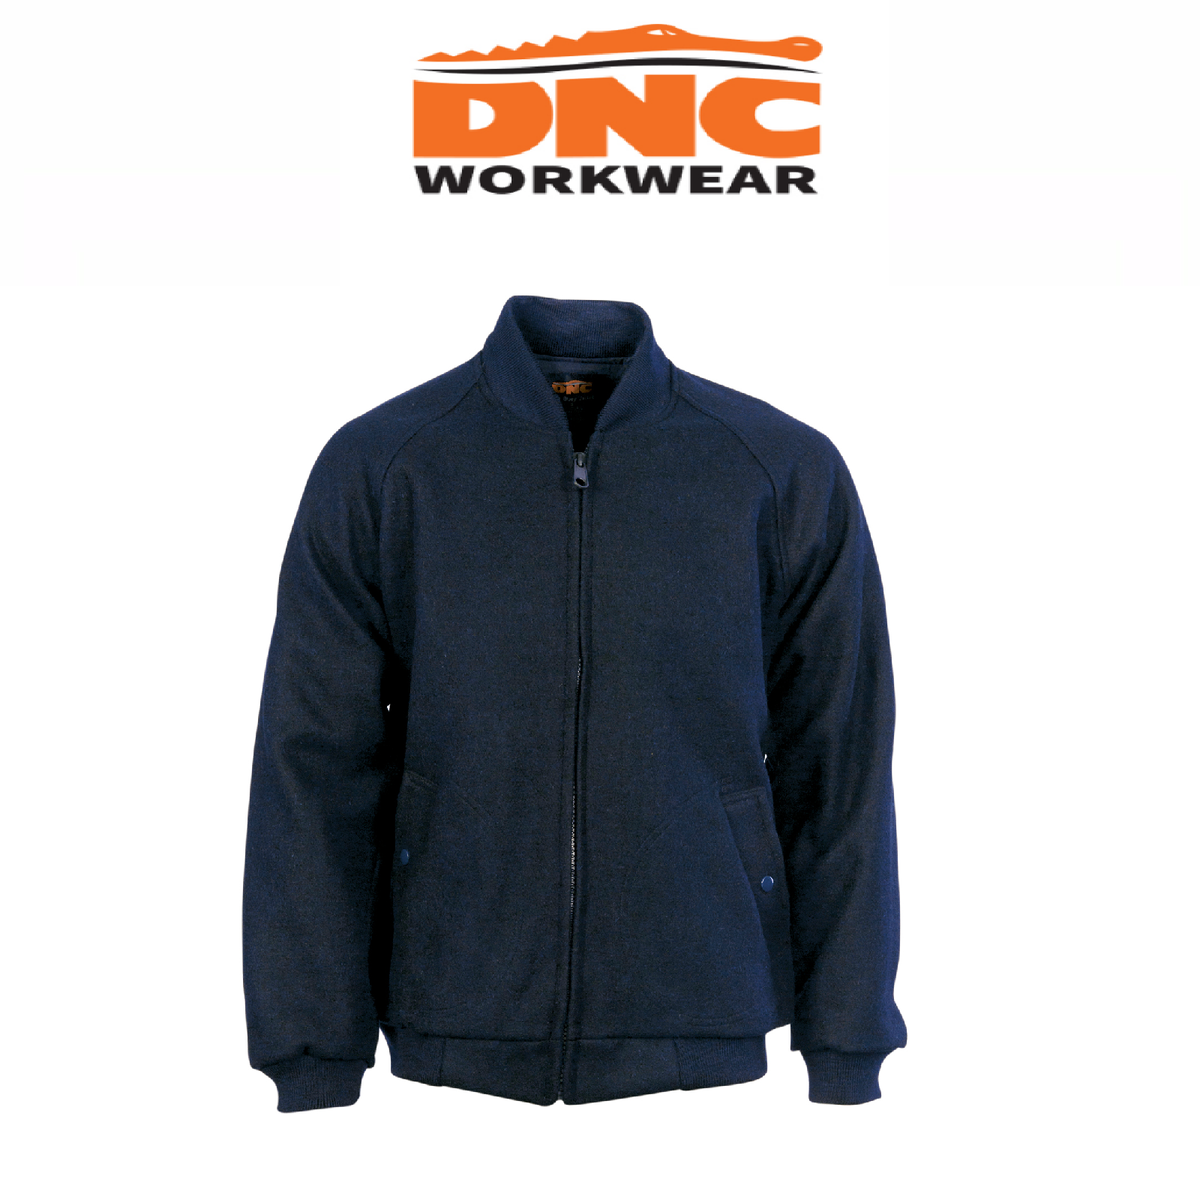 DNC Workwear Urban Jacket Flying Jacket - Plastic Zips Winter Work Wear 3605